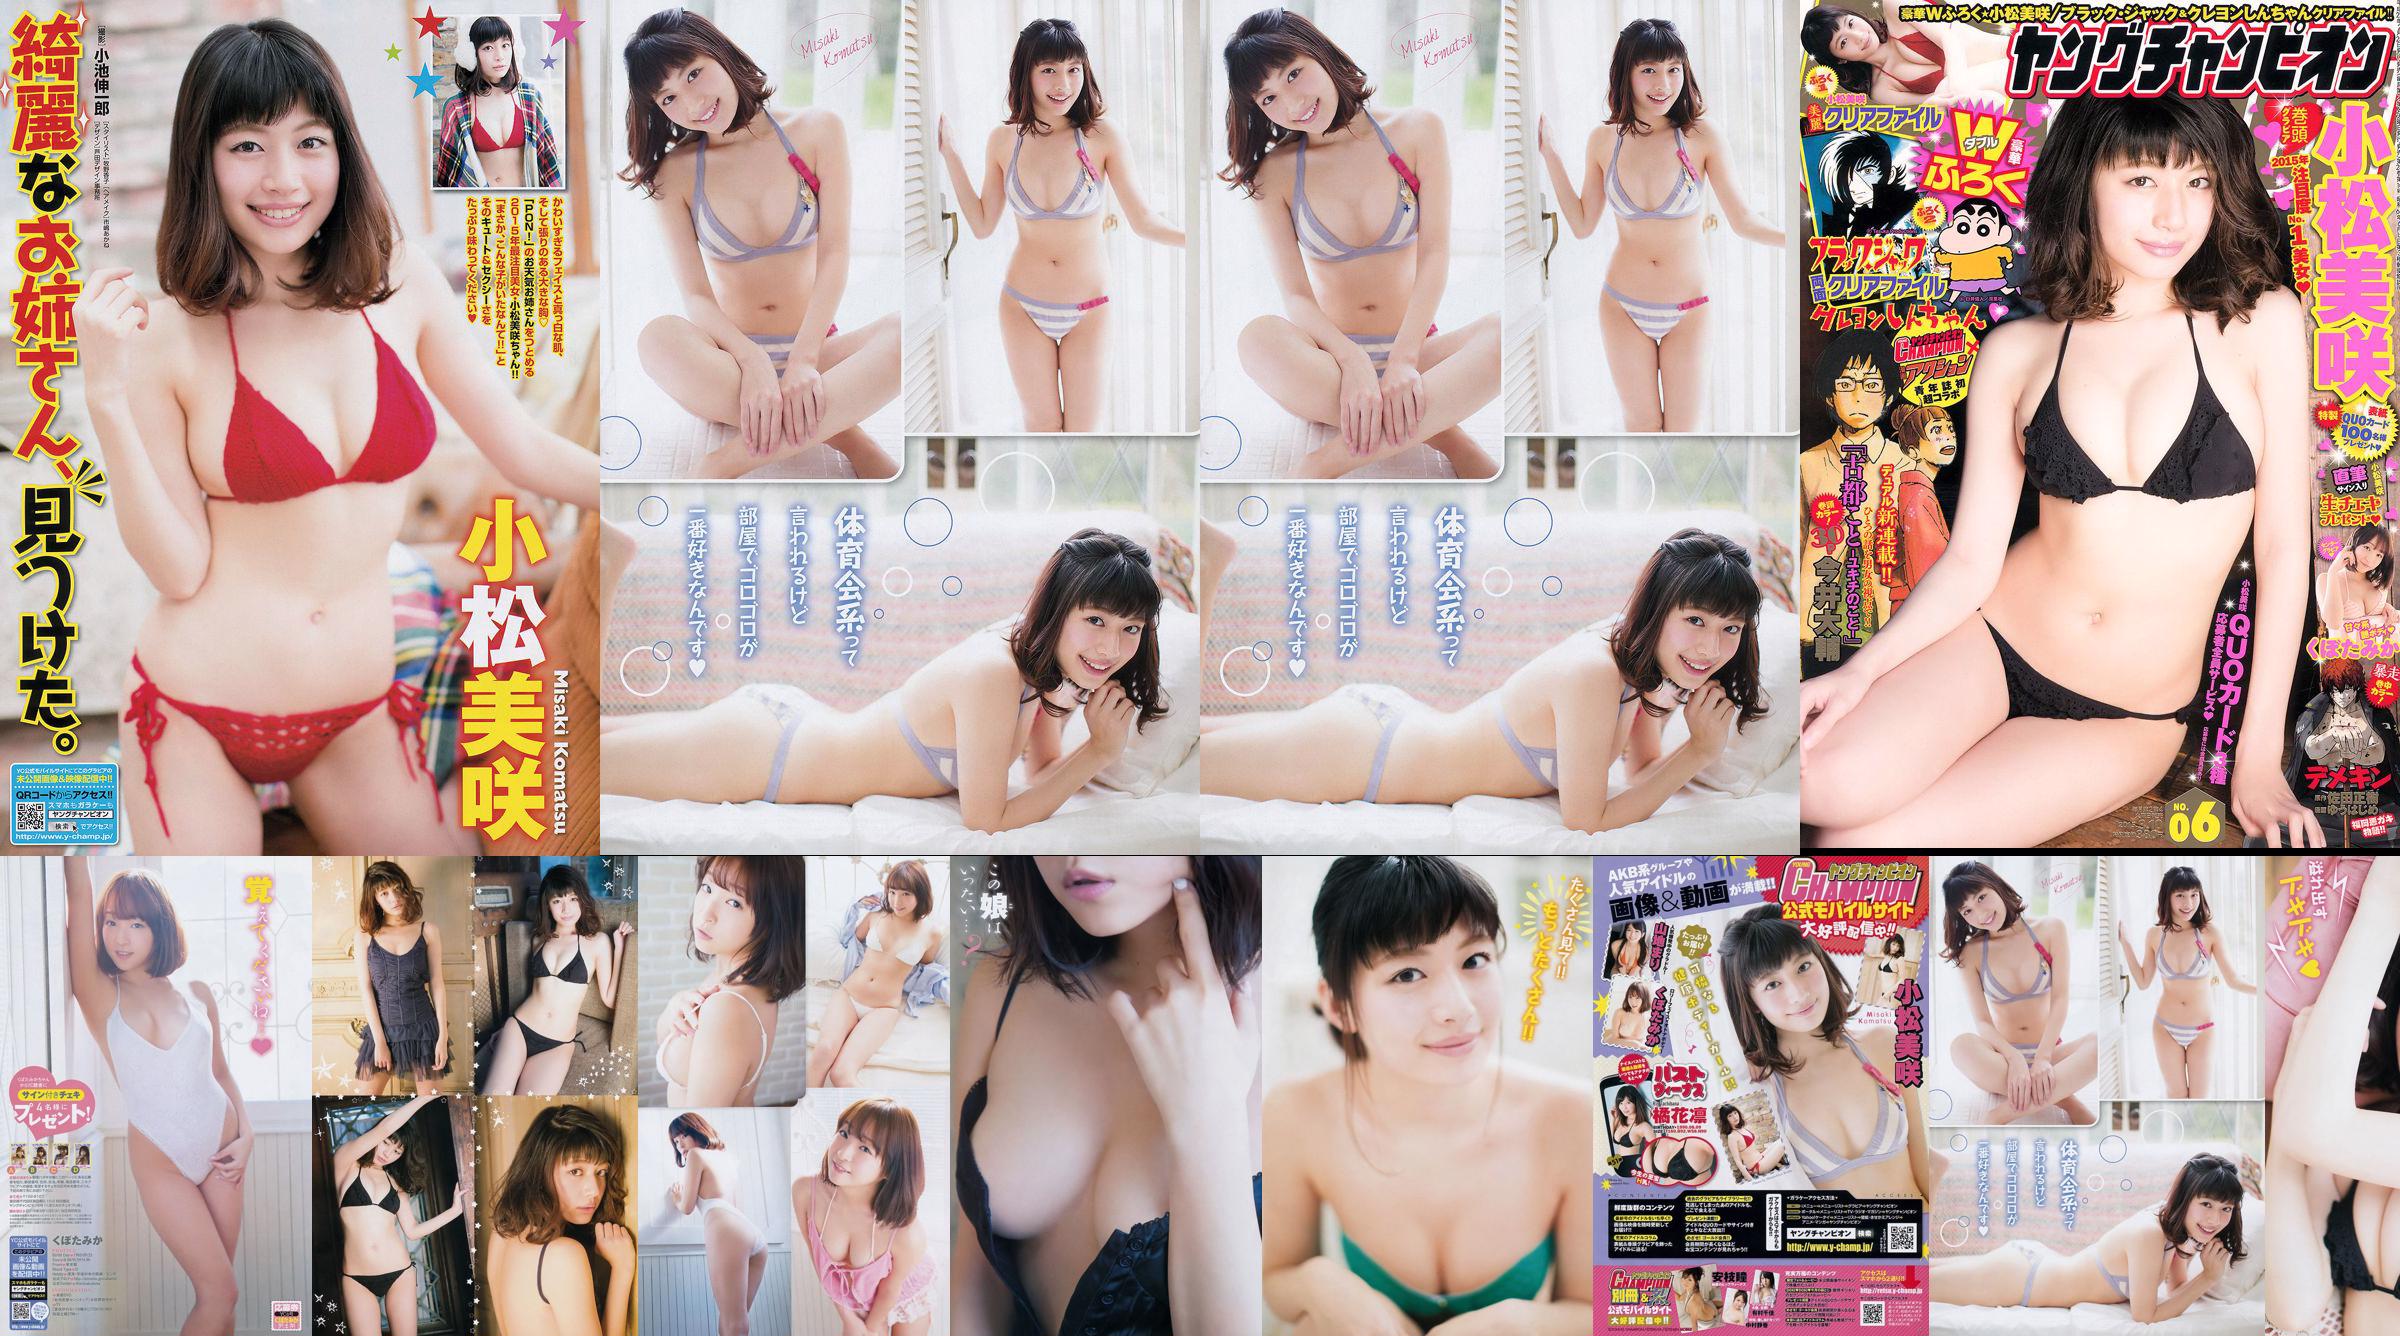 Hina Aizuki "Setiap! Cantik! Gadis !!" [Sabra.net] Strictly Girl No.0c4ab1 Halaman 1